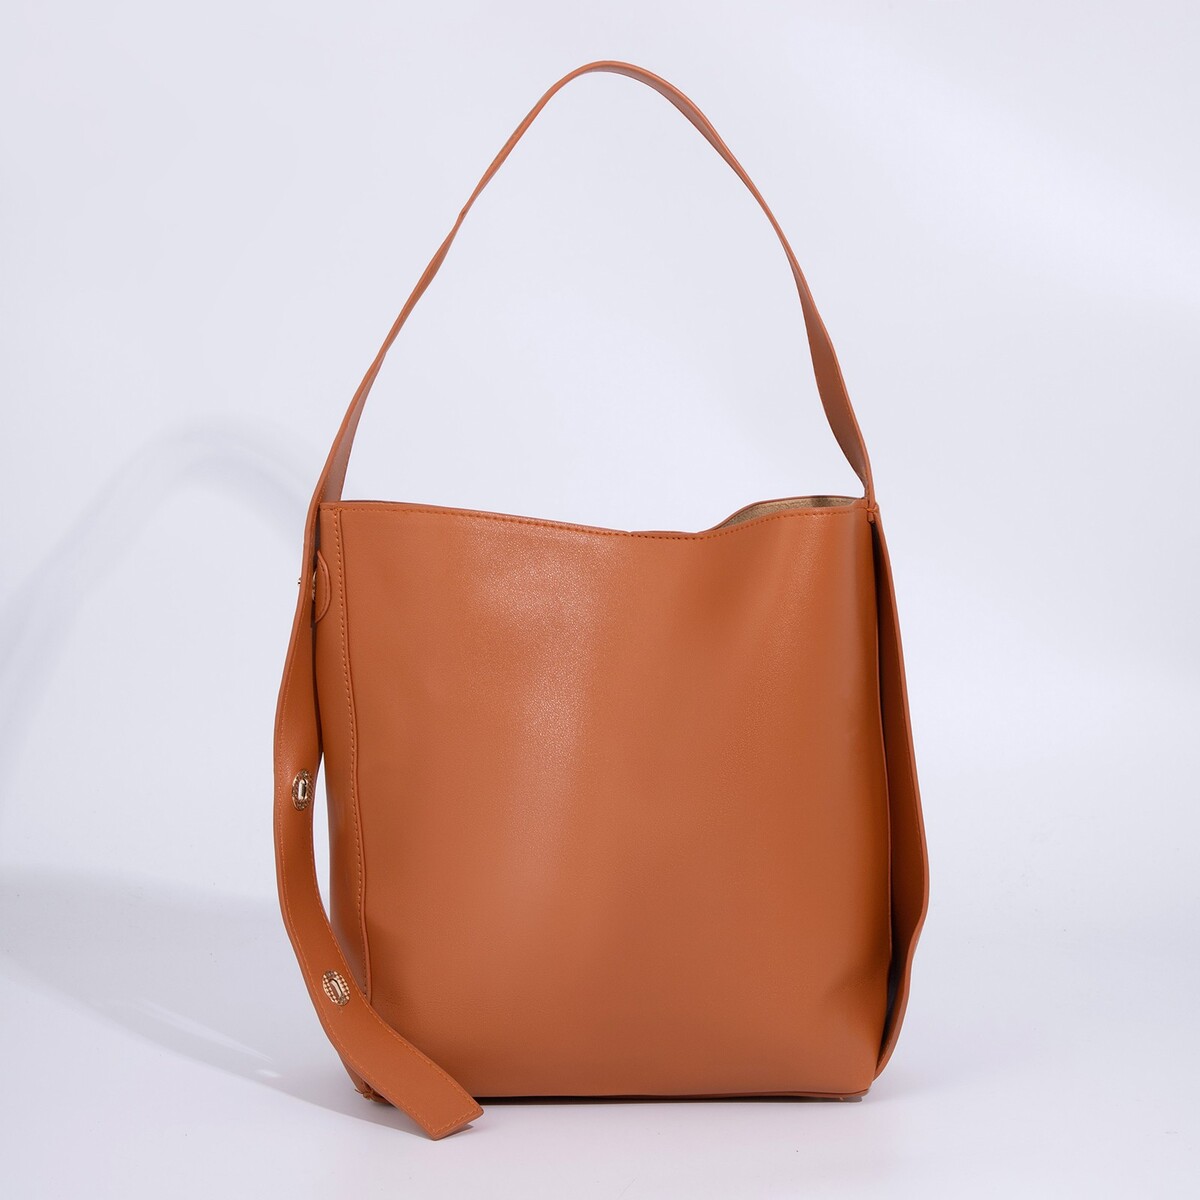 Сумка-мешок на магните, цвет коричневый сумка мешок женская на магните косметичка коричневый